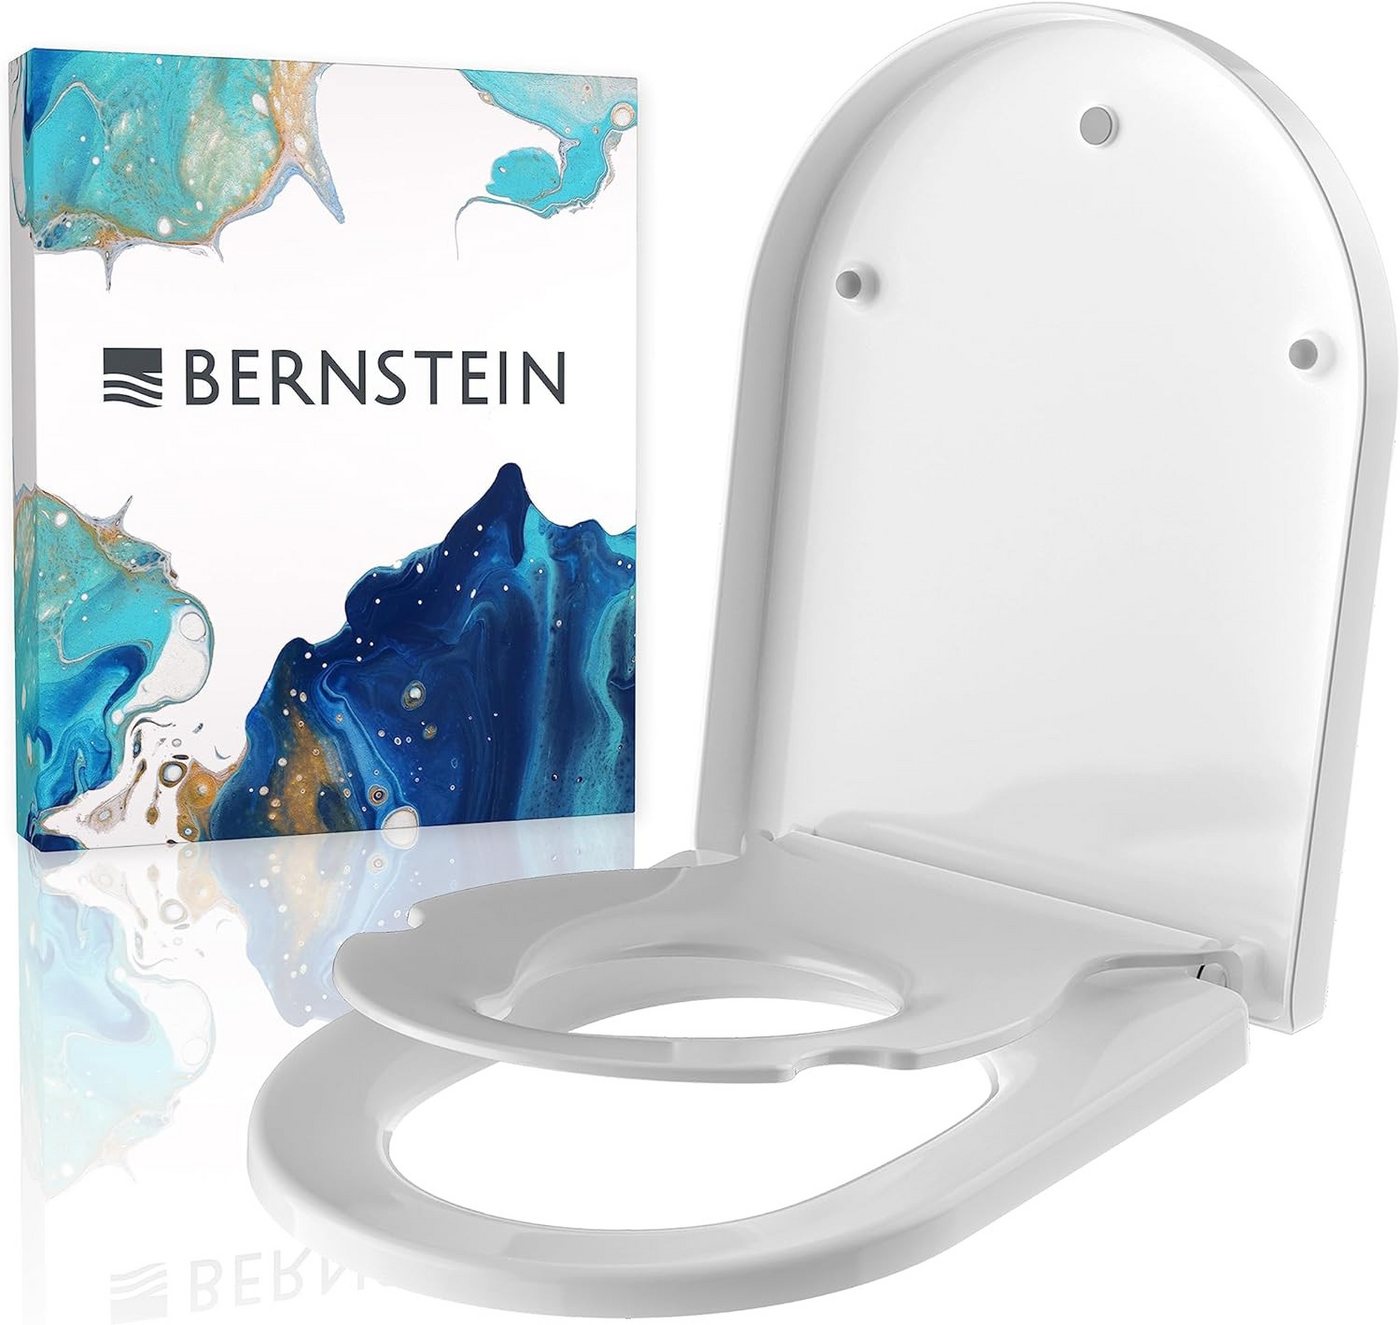 Bernstein WC-Sitz U1006 (Komplett-Set, inkl. Befestigungsmaterial), weiß / D-Form / Soft-Close/ mit Kinder-Sitz / abnehmbar / Duroplast von Bernstein